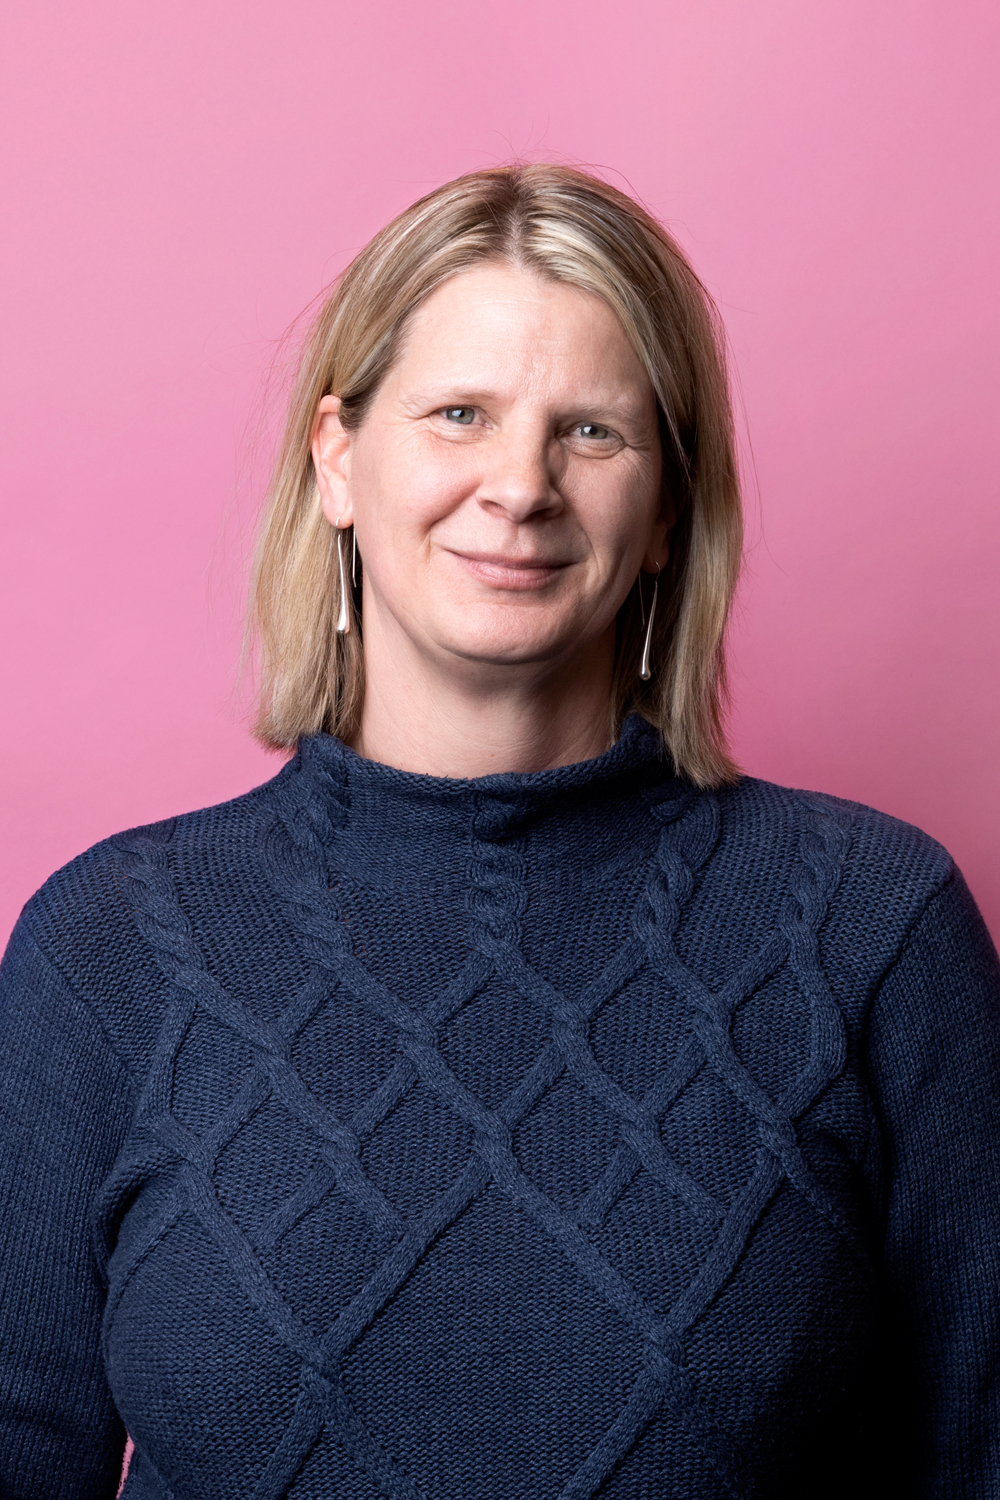 Porträttbild Ingela Johansson. Ingela har en mörkblå stickad tröja på sig.